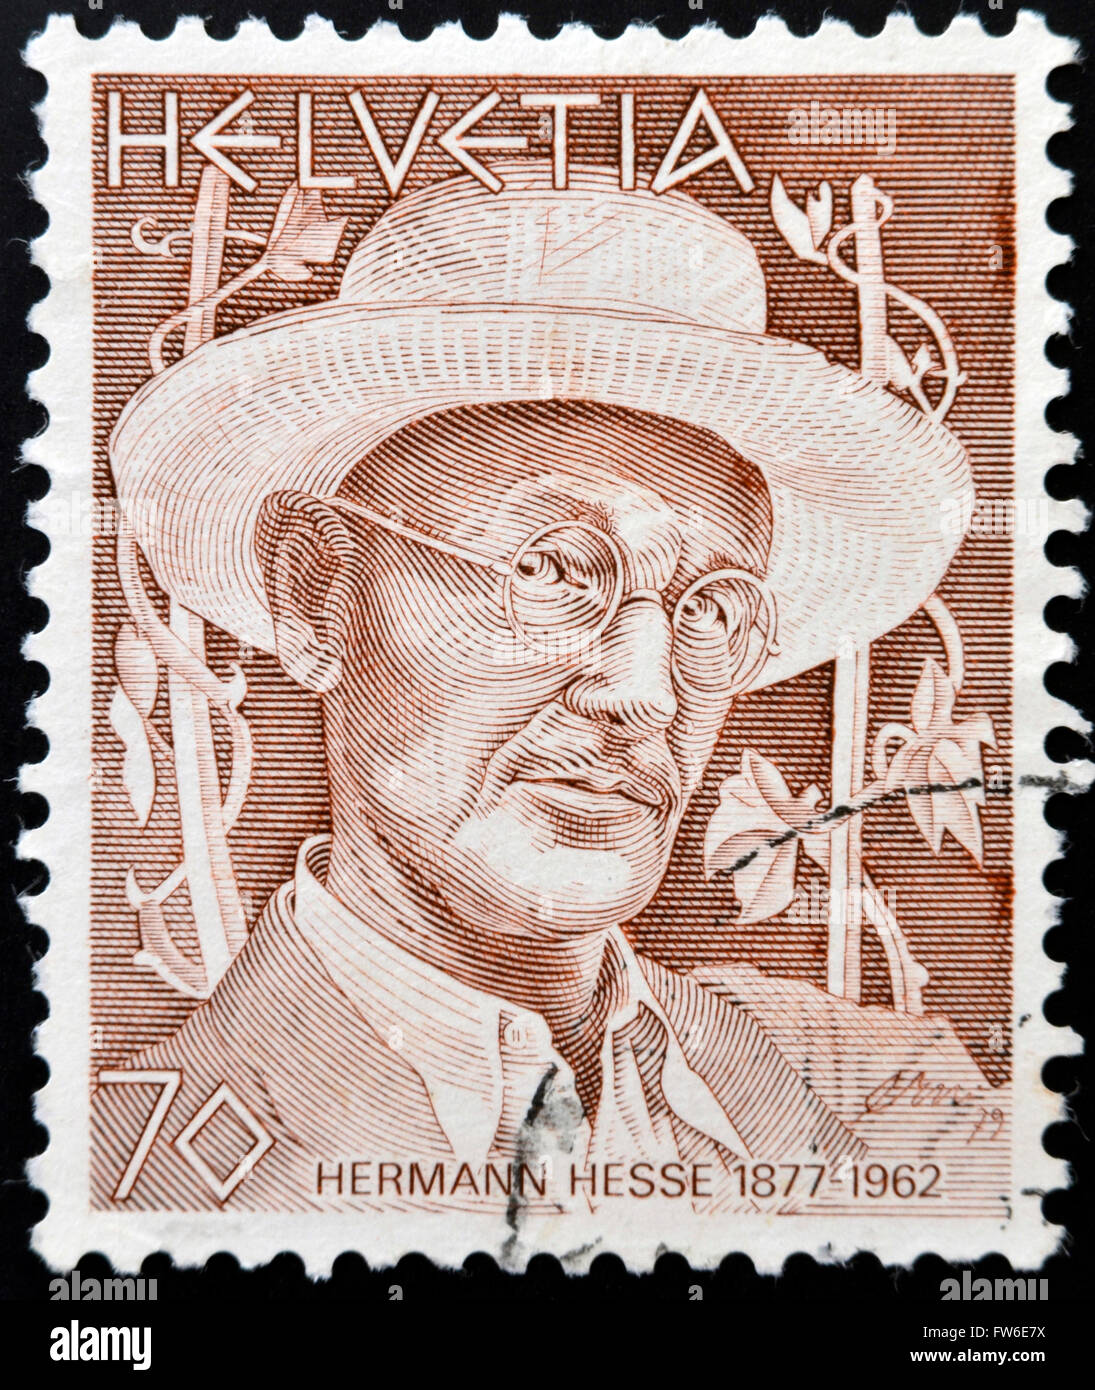 SWITZERLAND - CIRCA 1978: stamp printed in Switzerland shows Hermann Hesse, circa 1978 Stock Photo